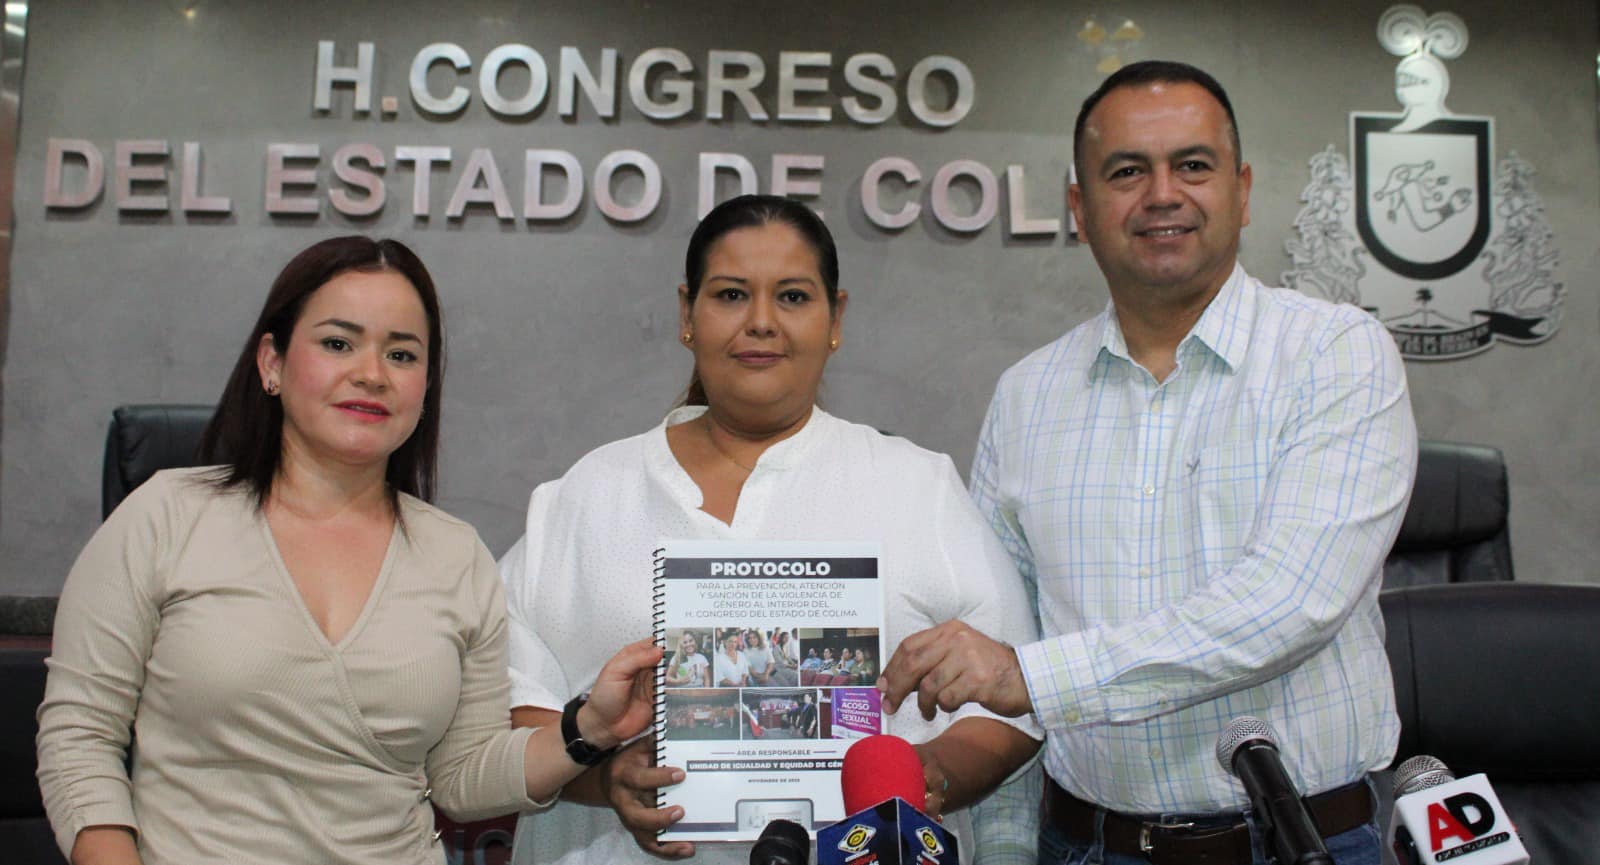 Presentación del “Protocolo para la Prevención de la Violencia de Género al Interior del Congreso del Estado de Colima”.